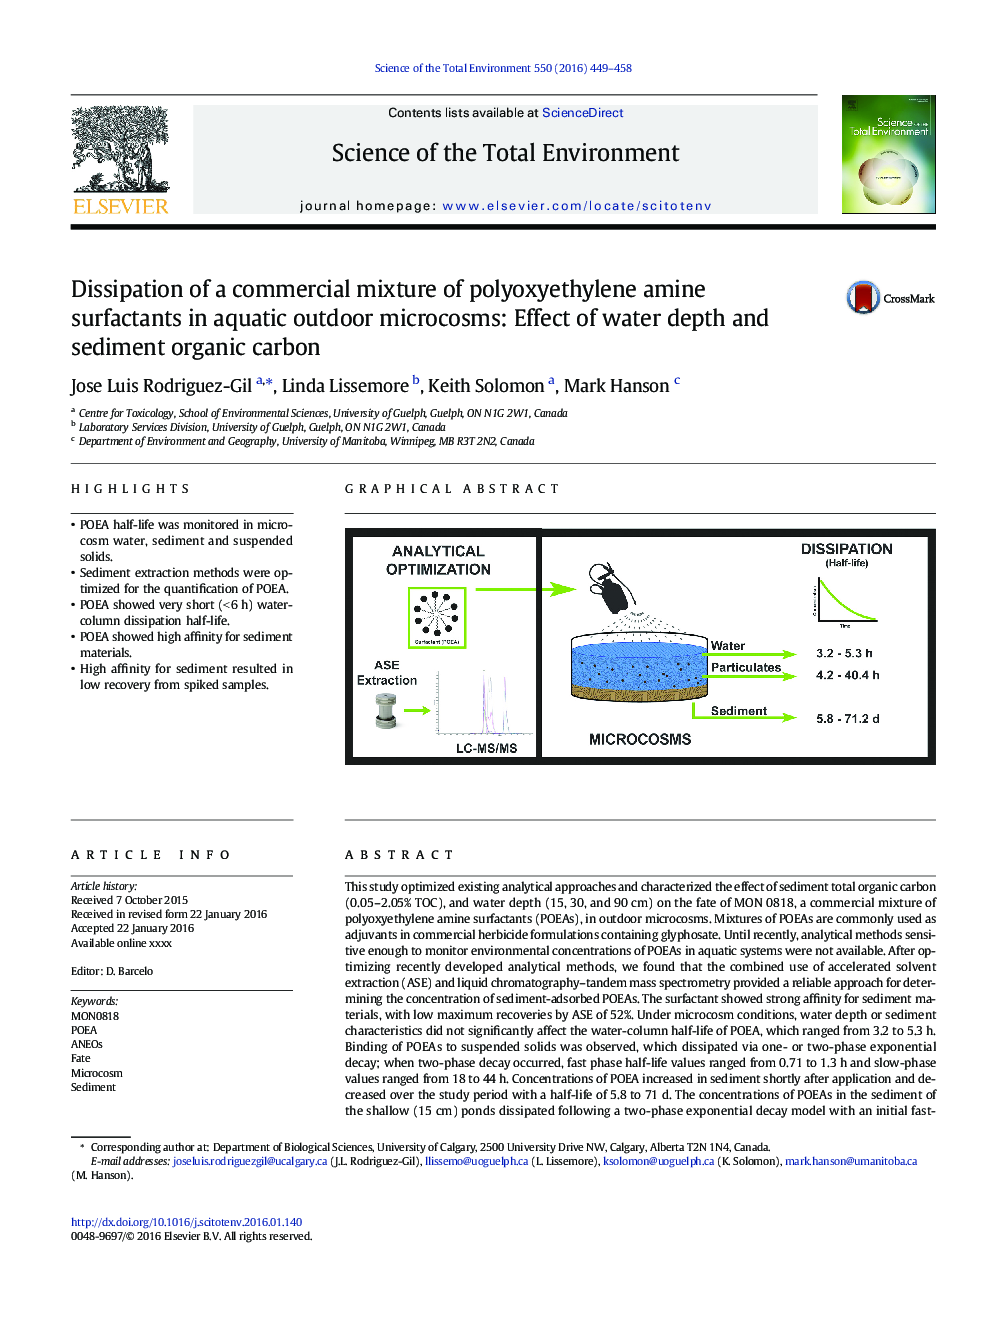 جداسازی یک مخلوط تجاری از سوراخهای فعال پلی اتیلن آمین در میکروکوزوم های دریایی آبزی: اثر عمق آب و کربن آلی رسوب 